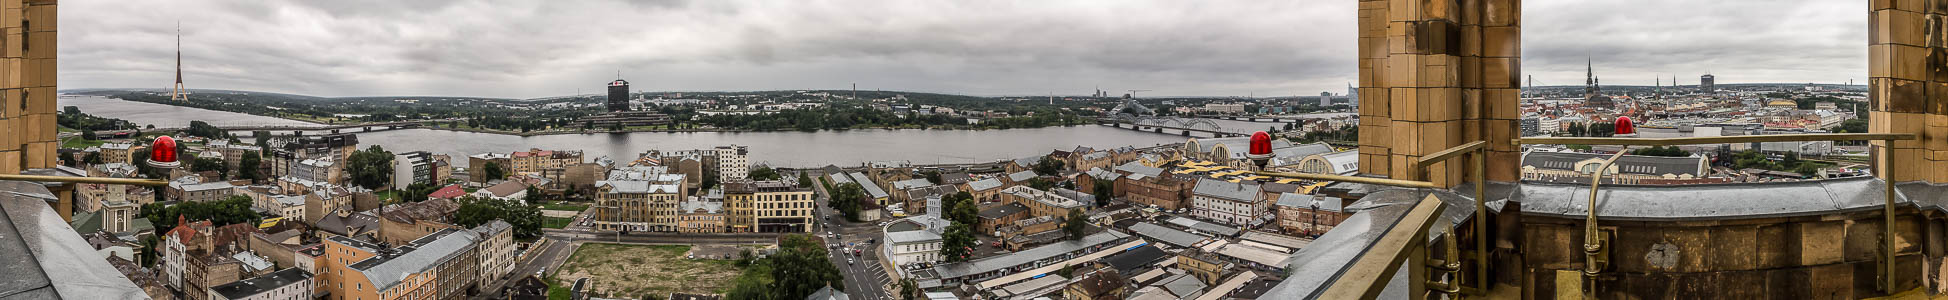 Riga Blick von der Akademie der Wissenschaften: Moskauer Vorstadt (Maskavas forstate) und Düna (Daugava) Altstadt Fernsehturm Riga Inselbrücke